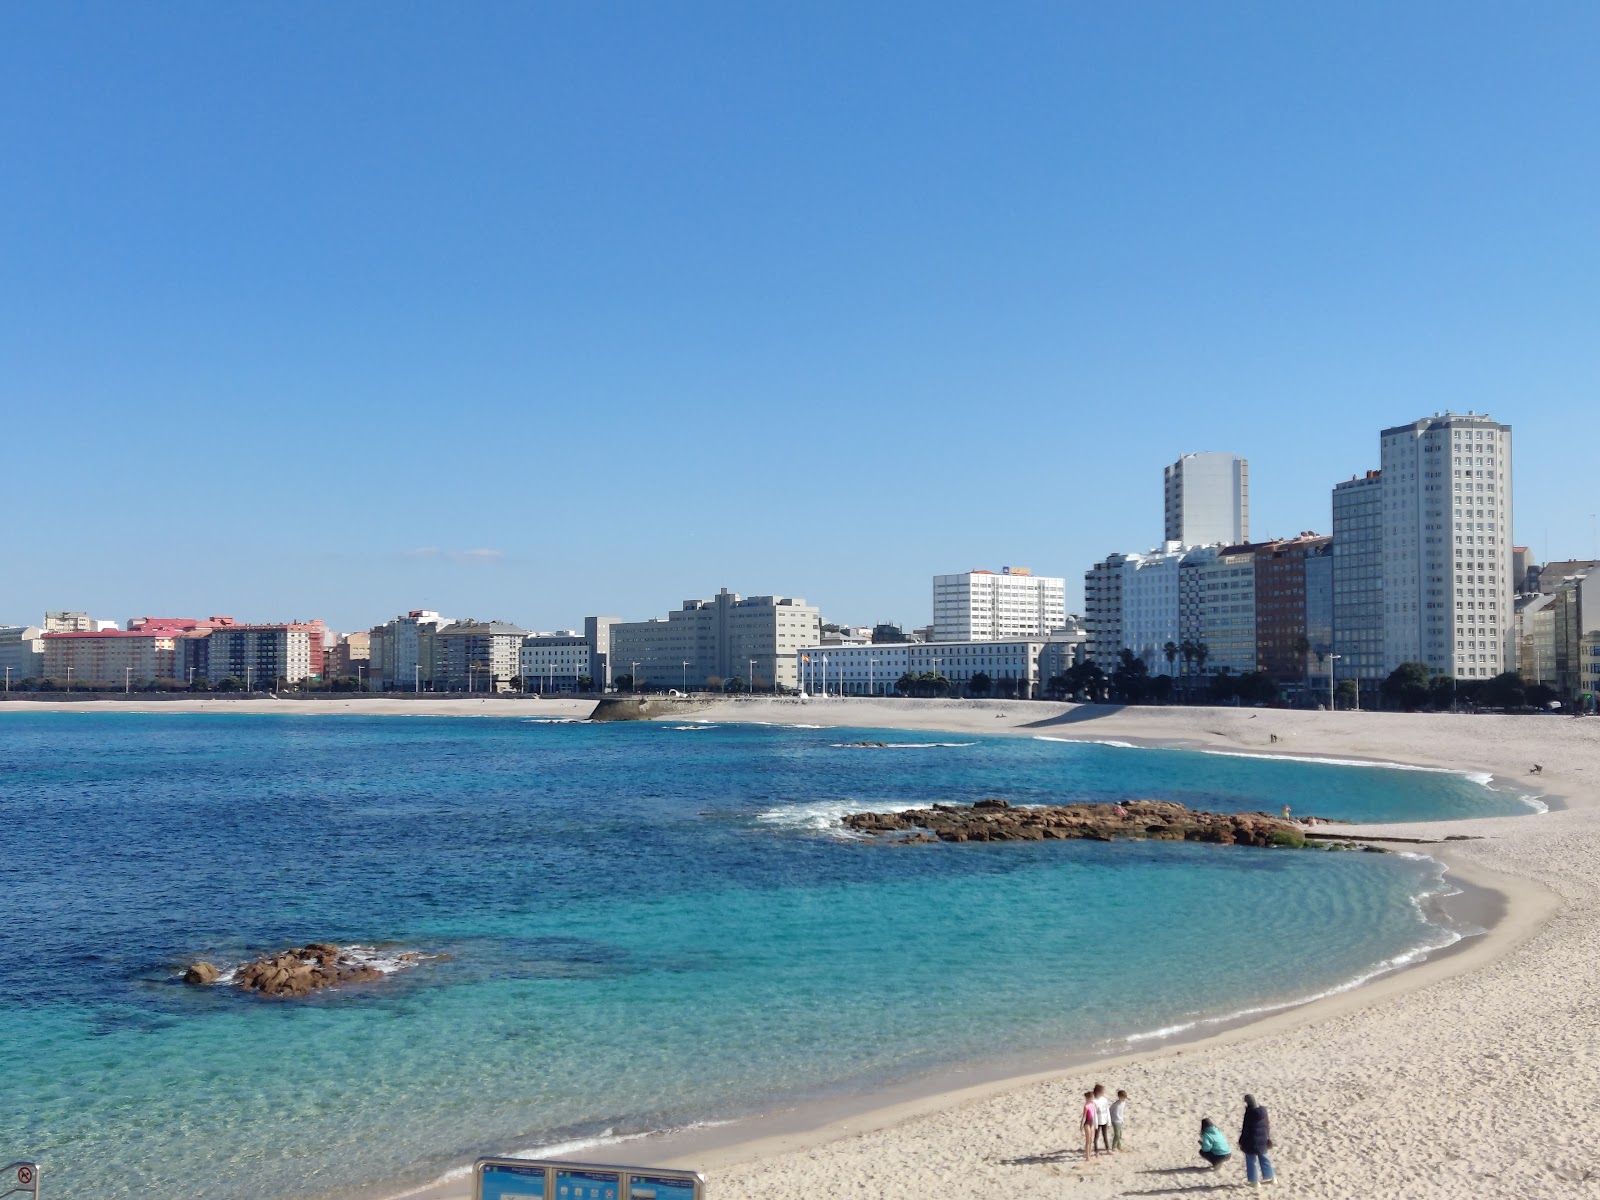 Riazor Plajı'in fotoğrafı - rahatlamayı sevenler arasında popüler bir yer